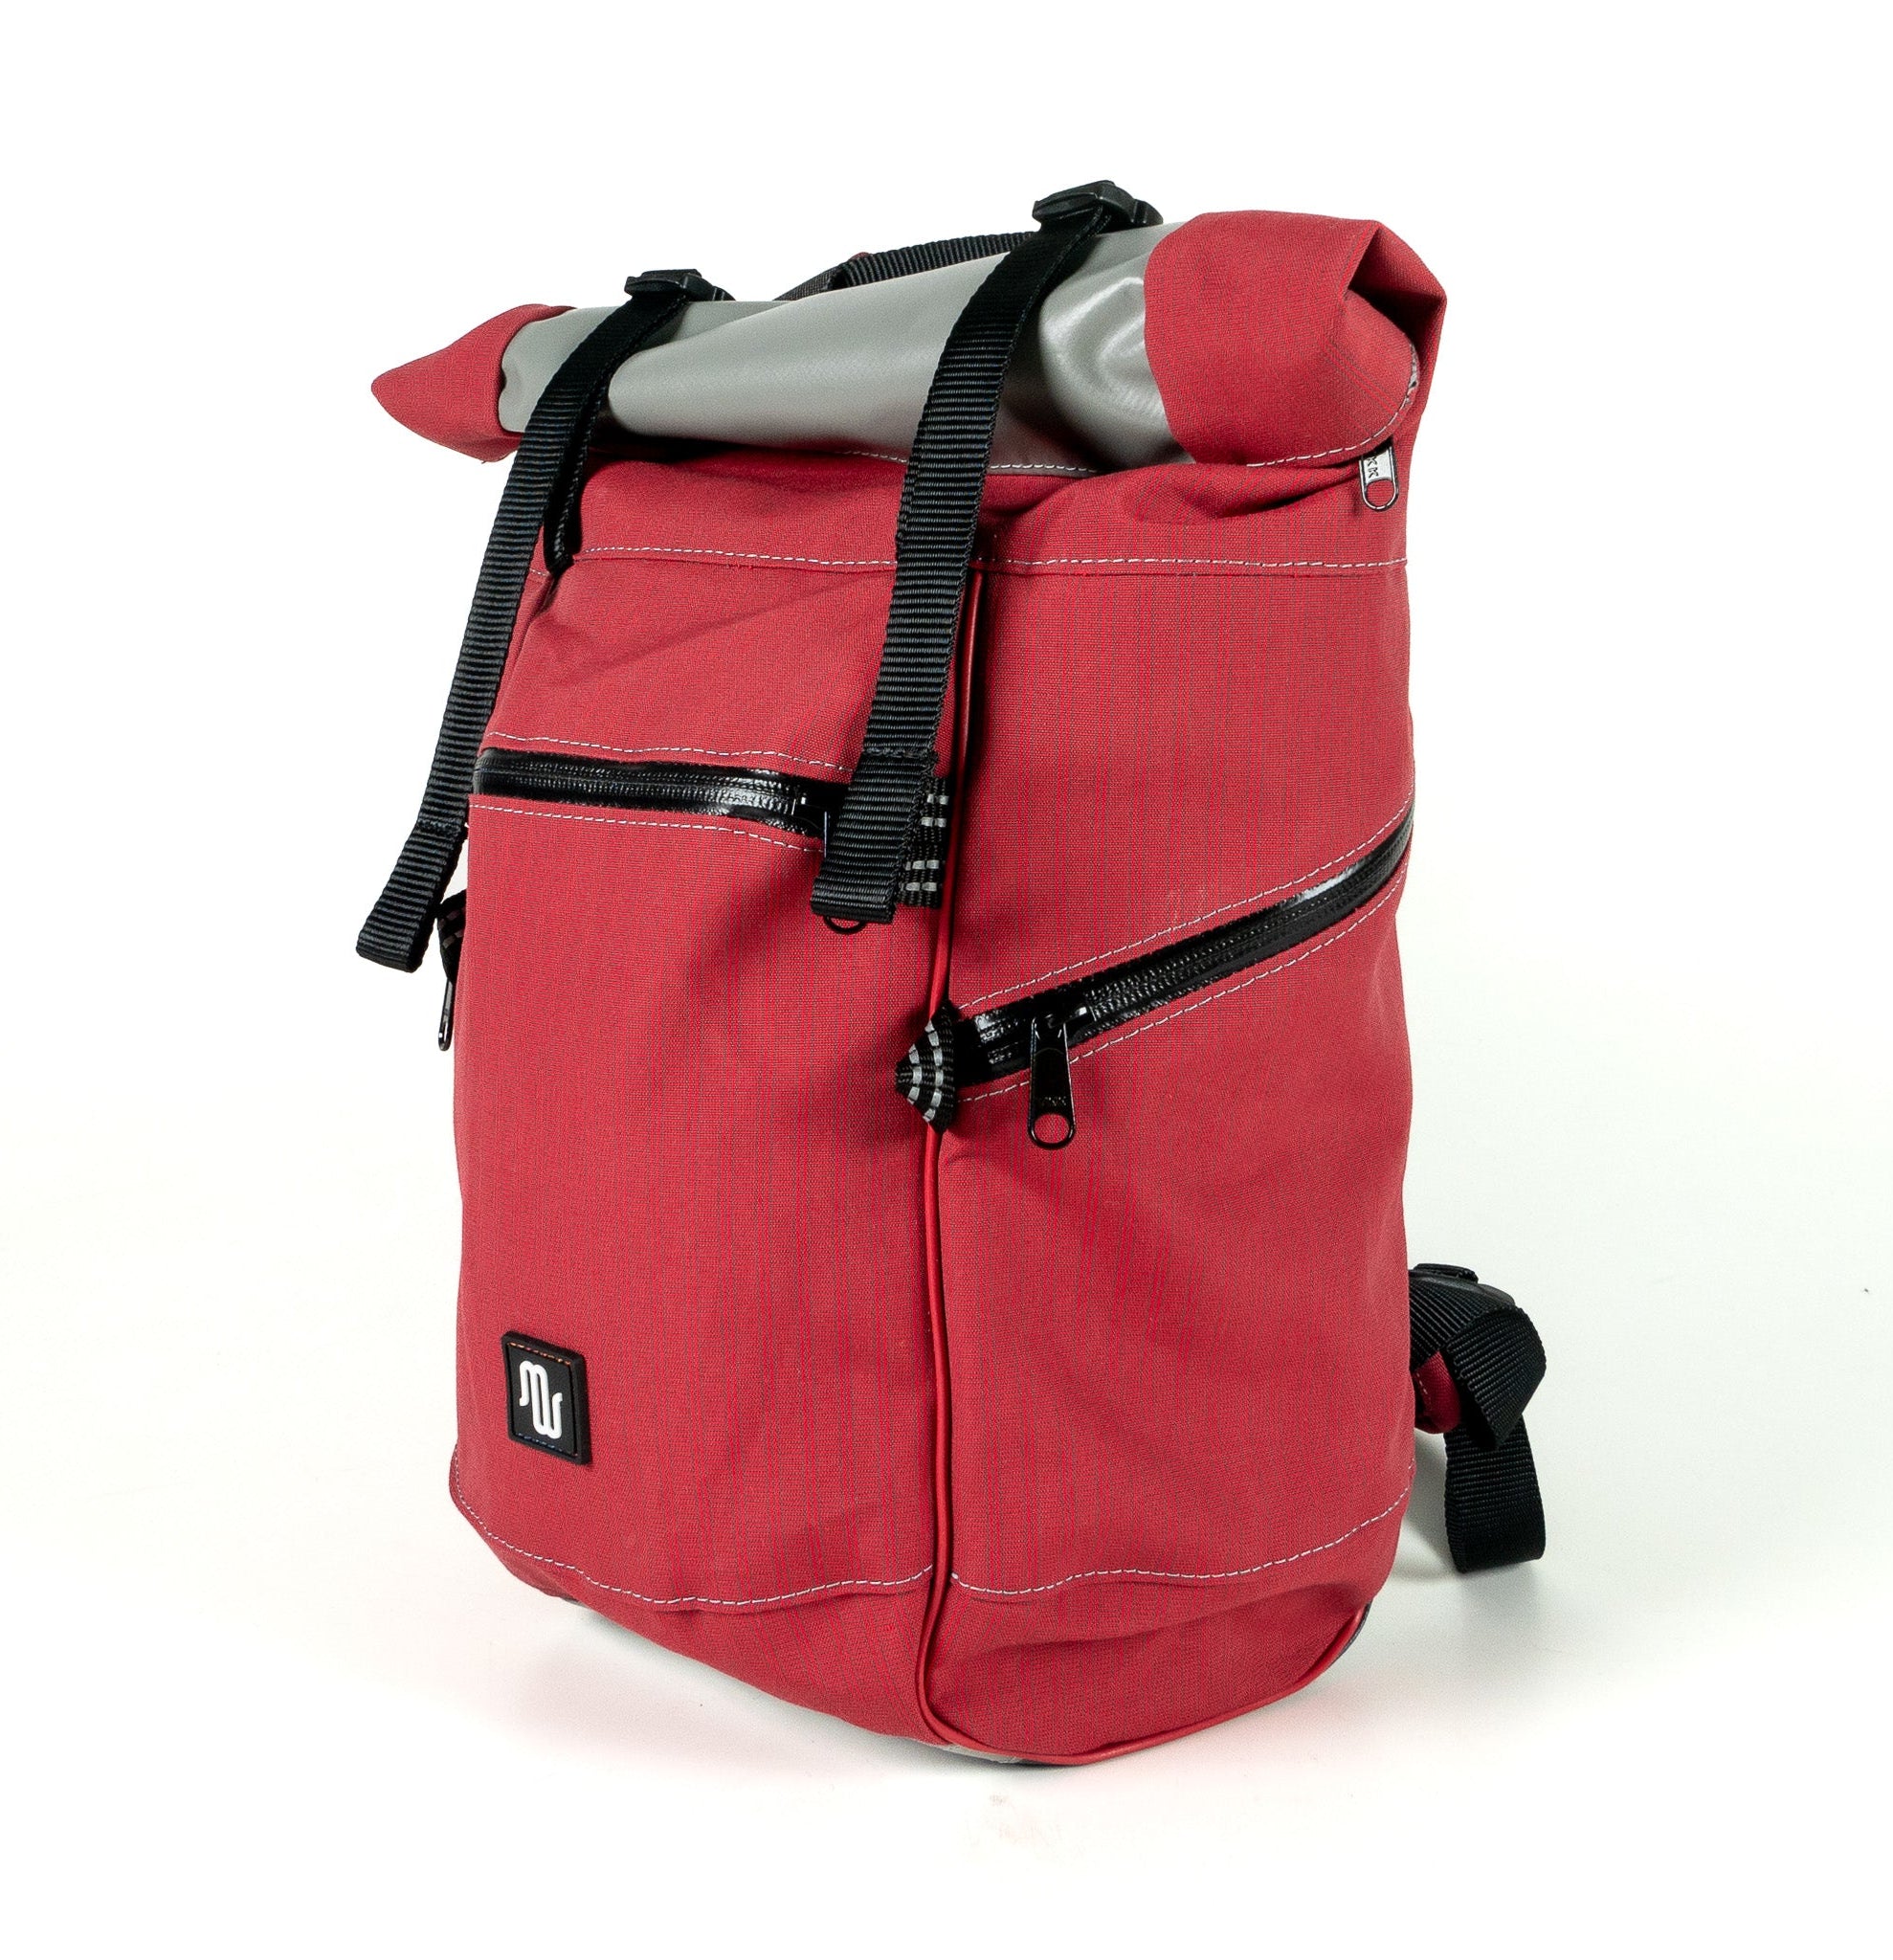 BUDDY No. 119 - Backpacks - medencebag